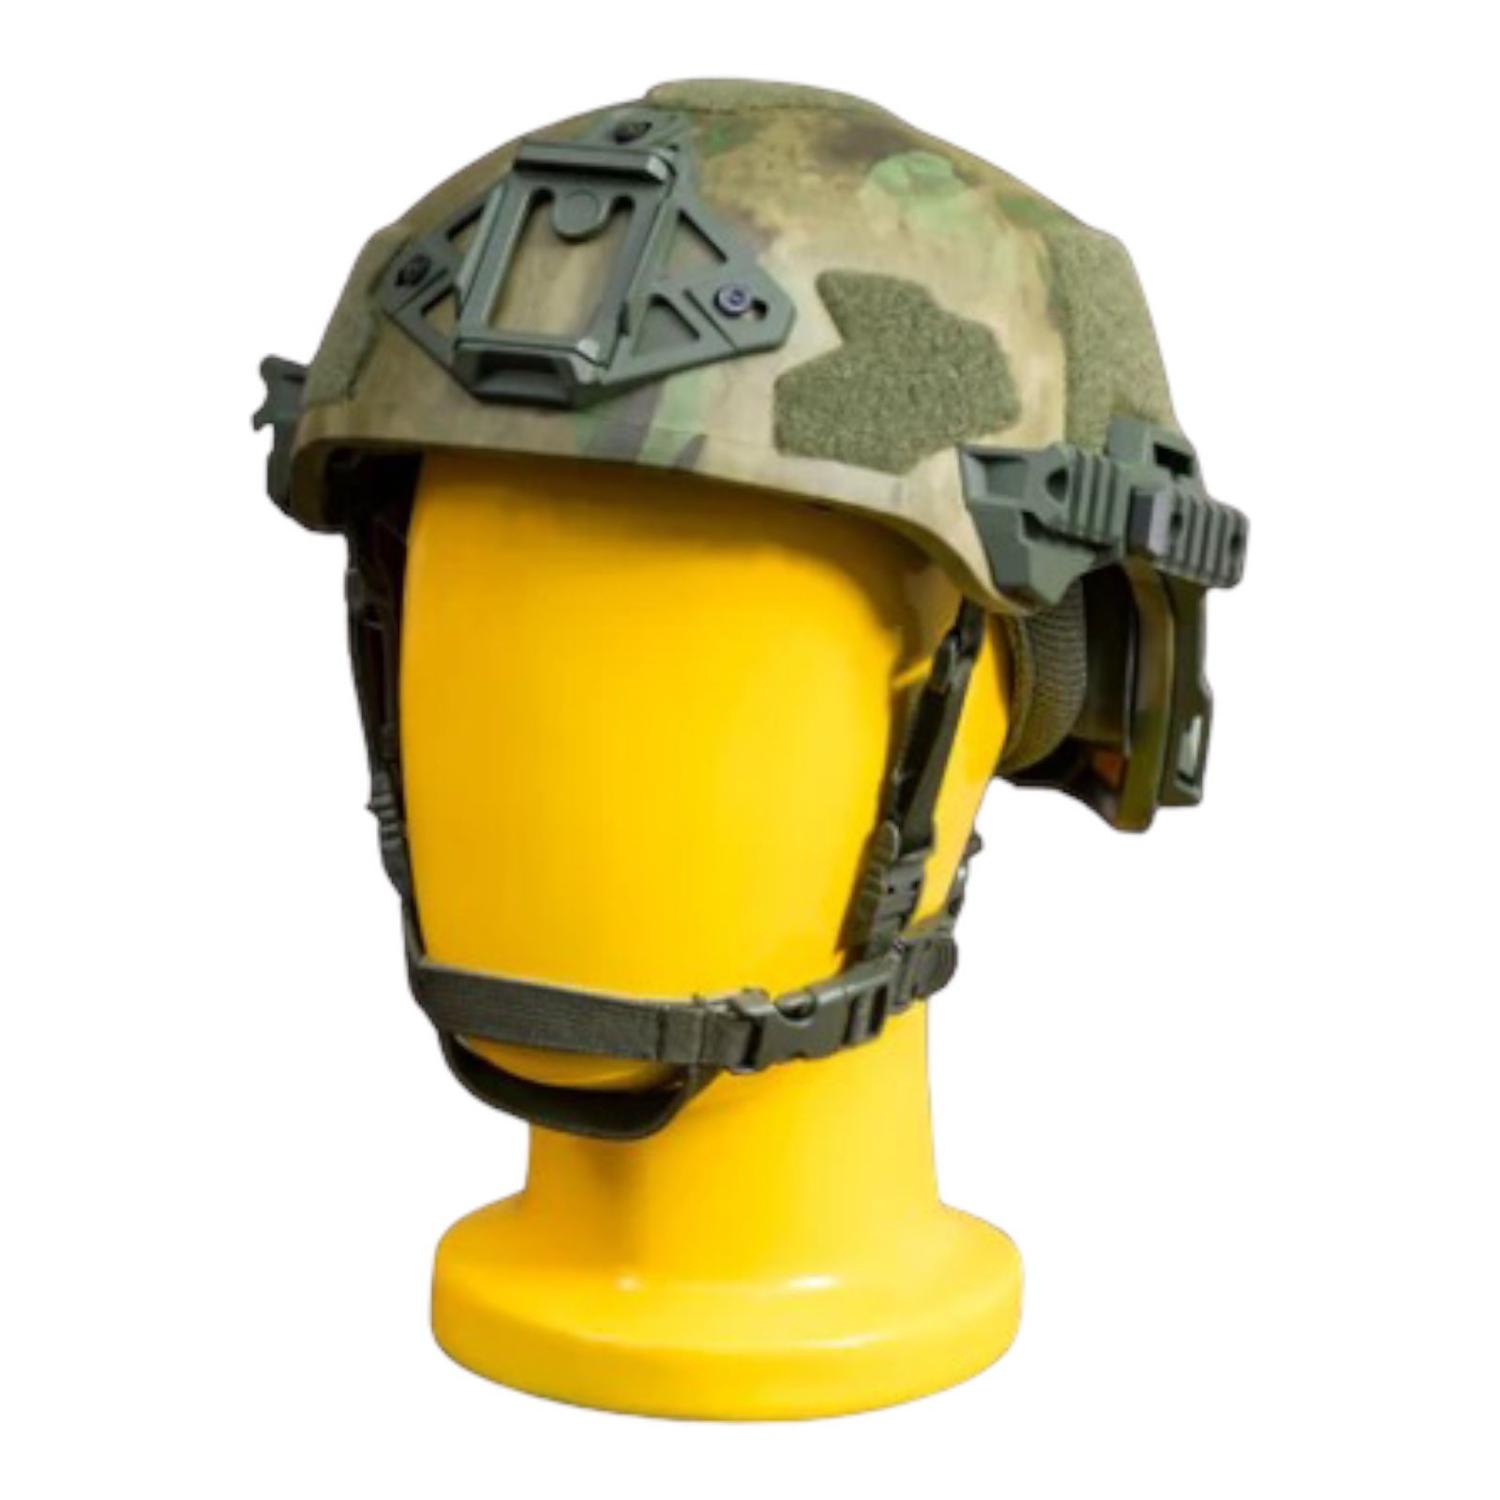 Тактический шлем Militech Exfil Atacs FG, размер 54-59 см